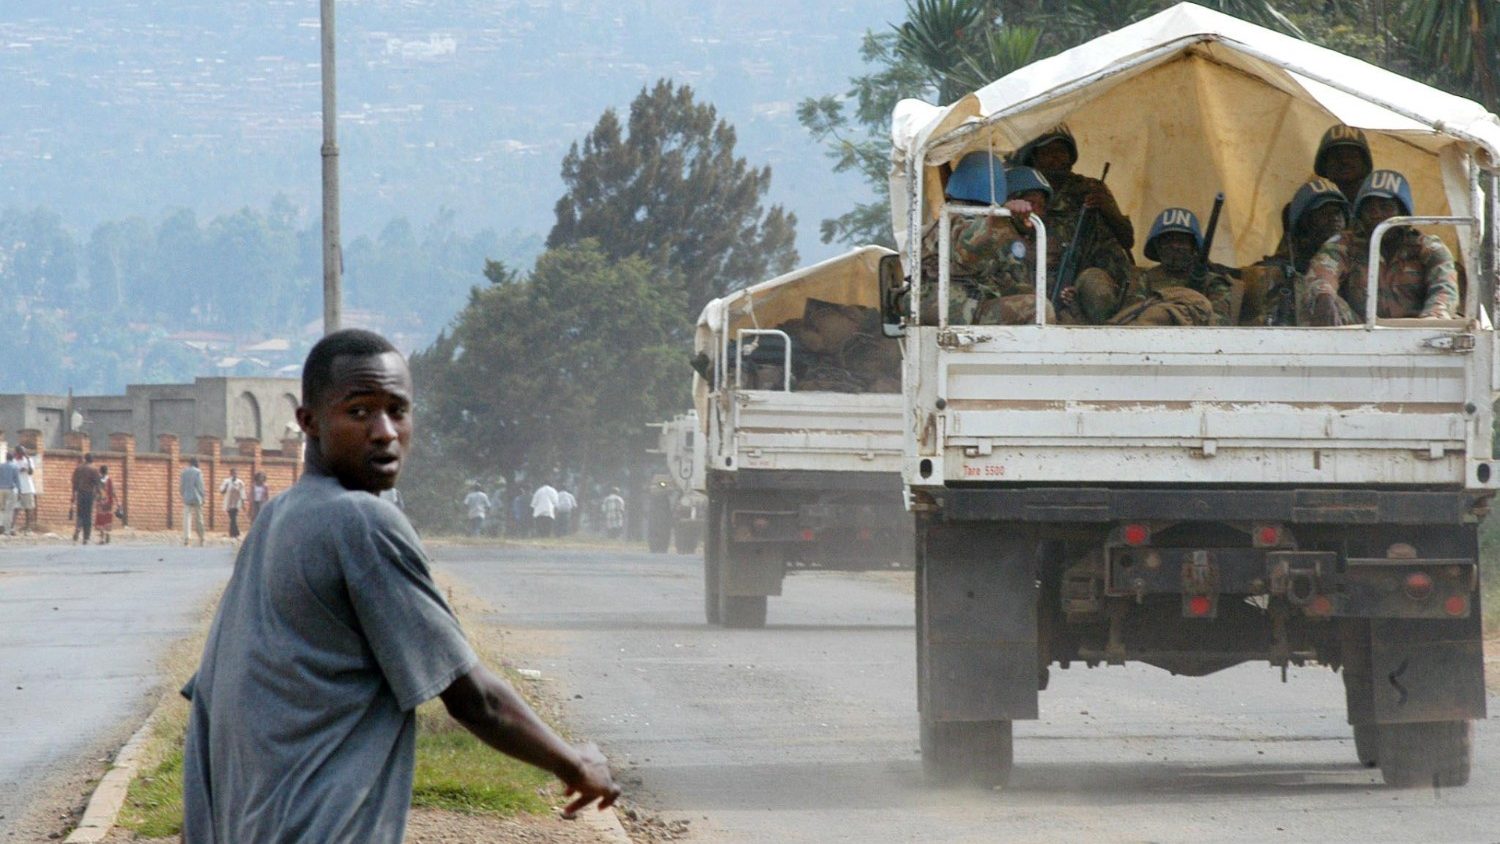 Papa na RD do Congo. Rebeldes continuam a atacar populações